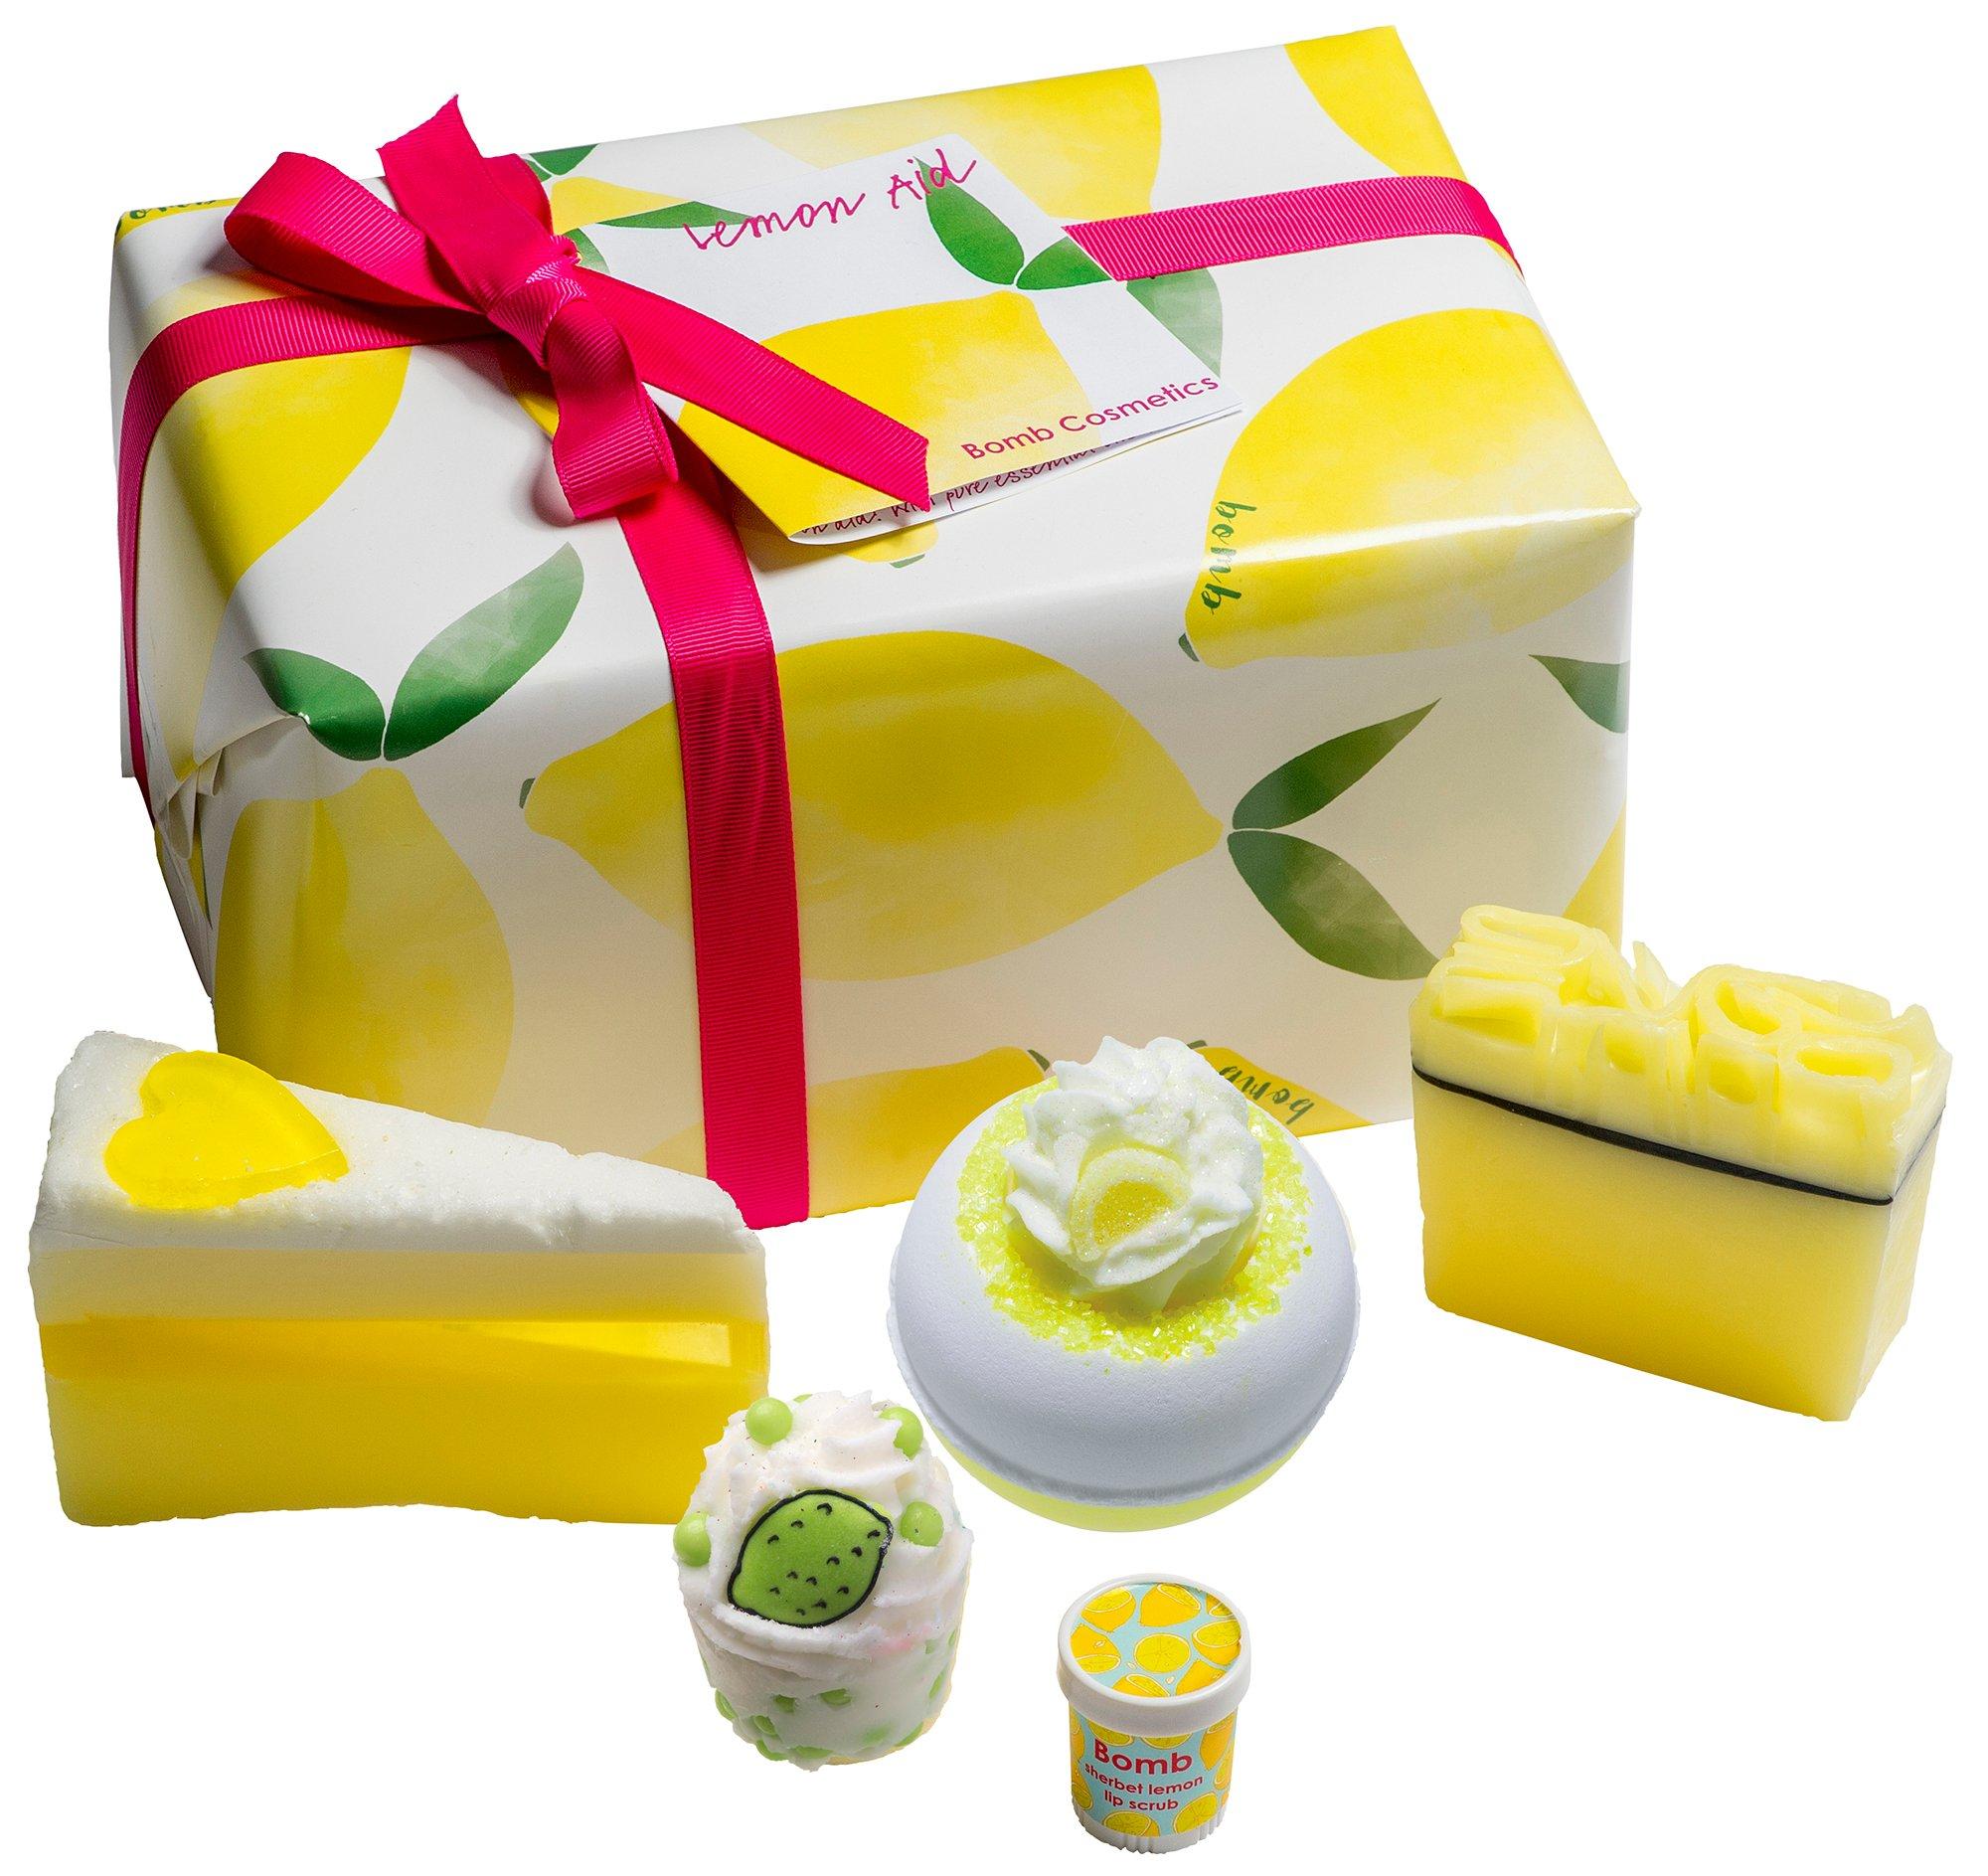 5 Pc. Lemon Aid Handmade Gift Pack